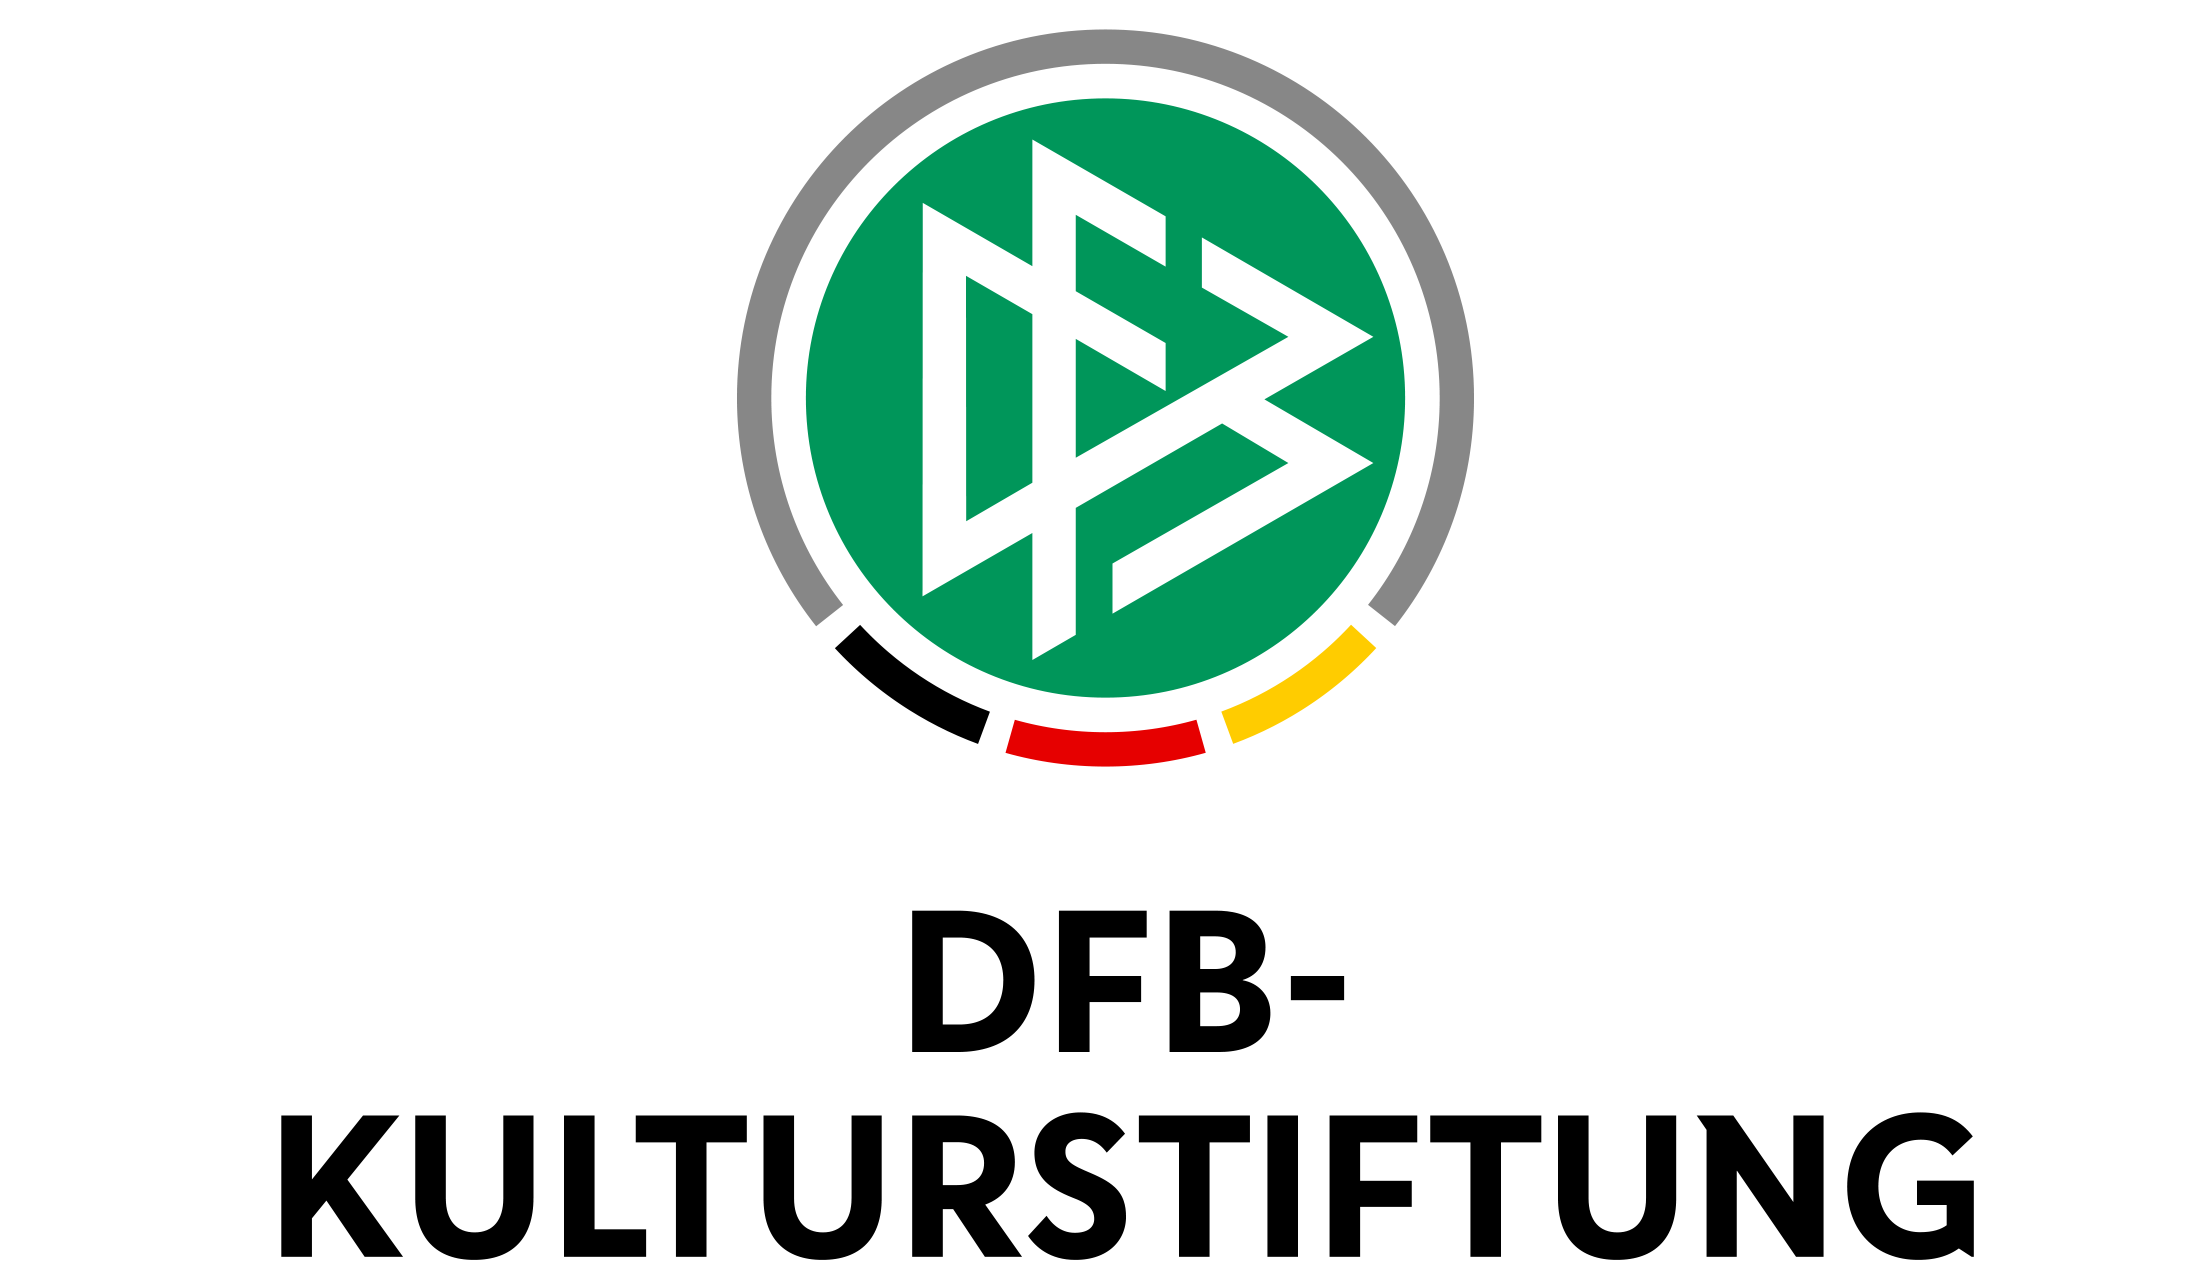 Logo der DFB-Kulturstiftung - ein grüner Kreis mit stilisierten Buchstaben 